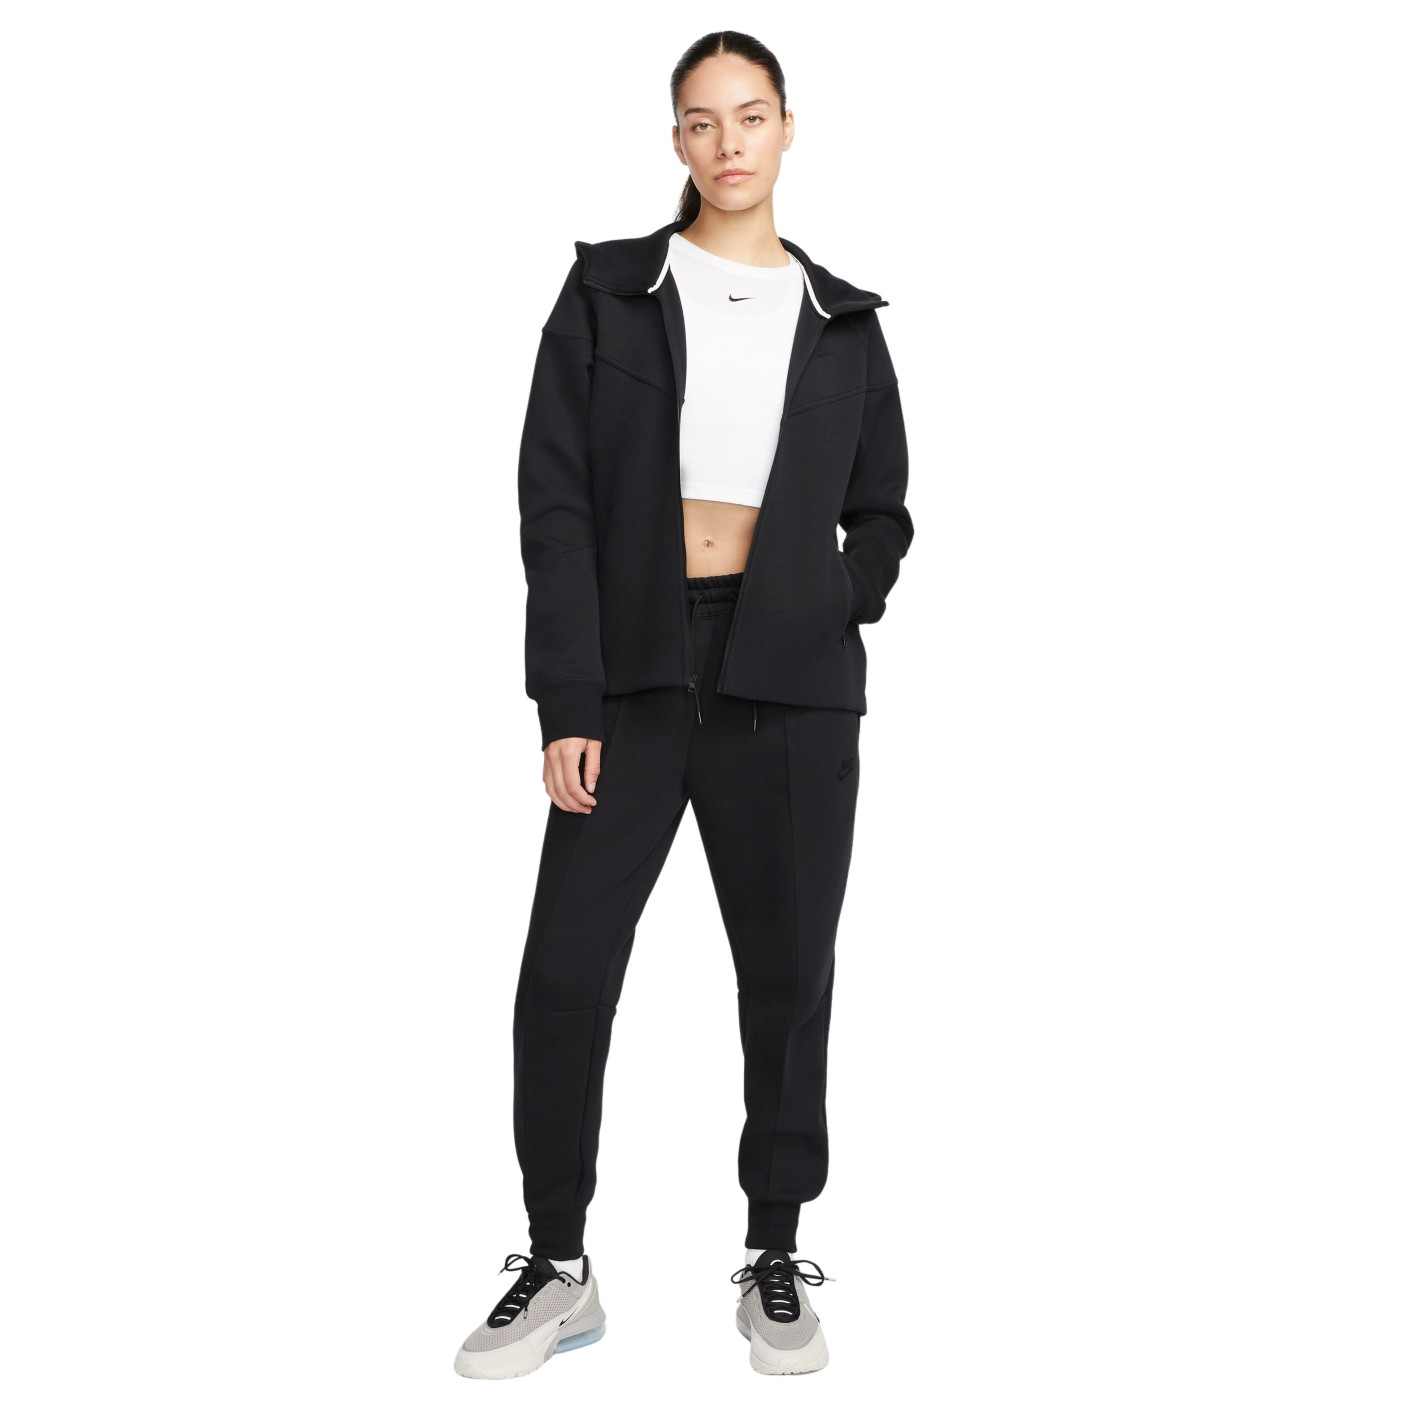 Nike Tech Fleece Sportswear Survêtement Femmes Noir